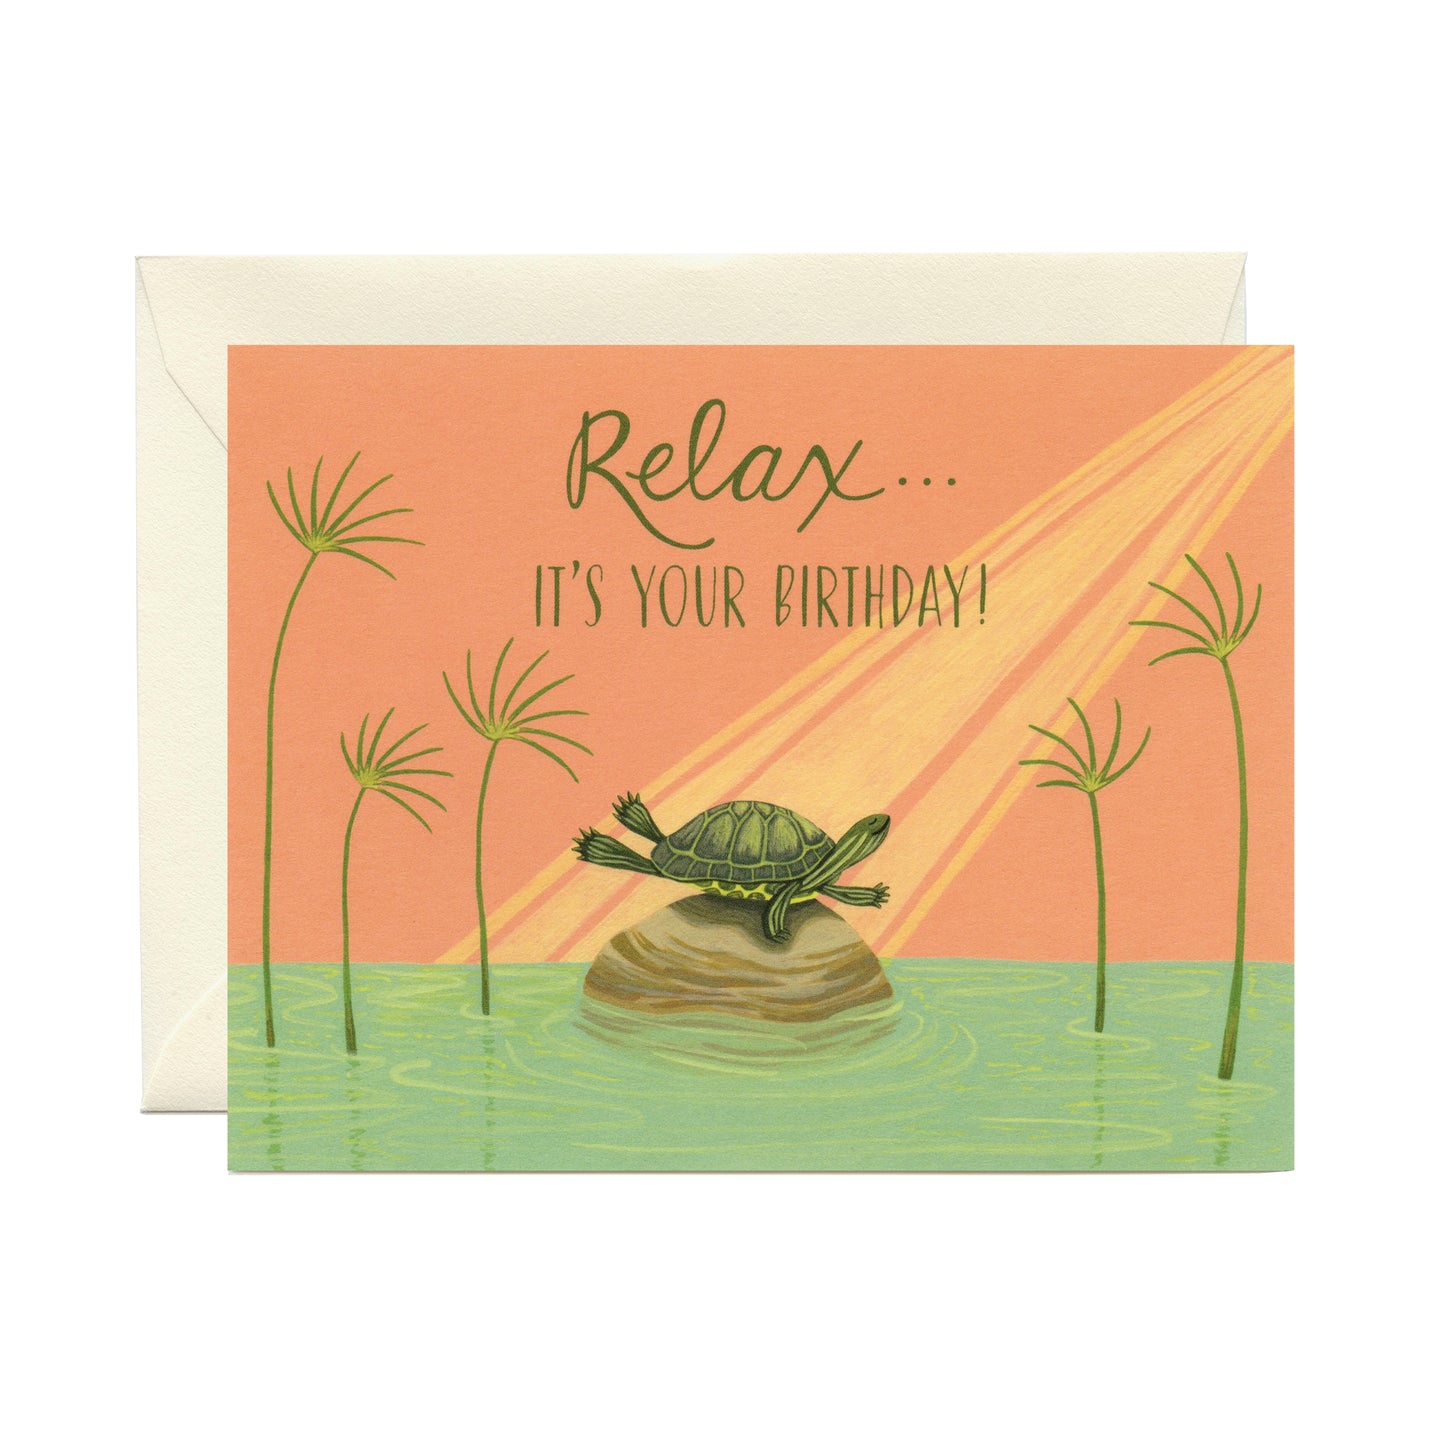 SUNBATHING TURTLE RELAXING - BIRTHDAY GREETING CARD